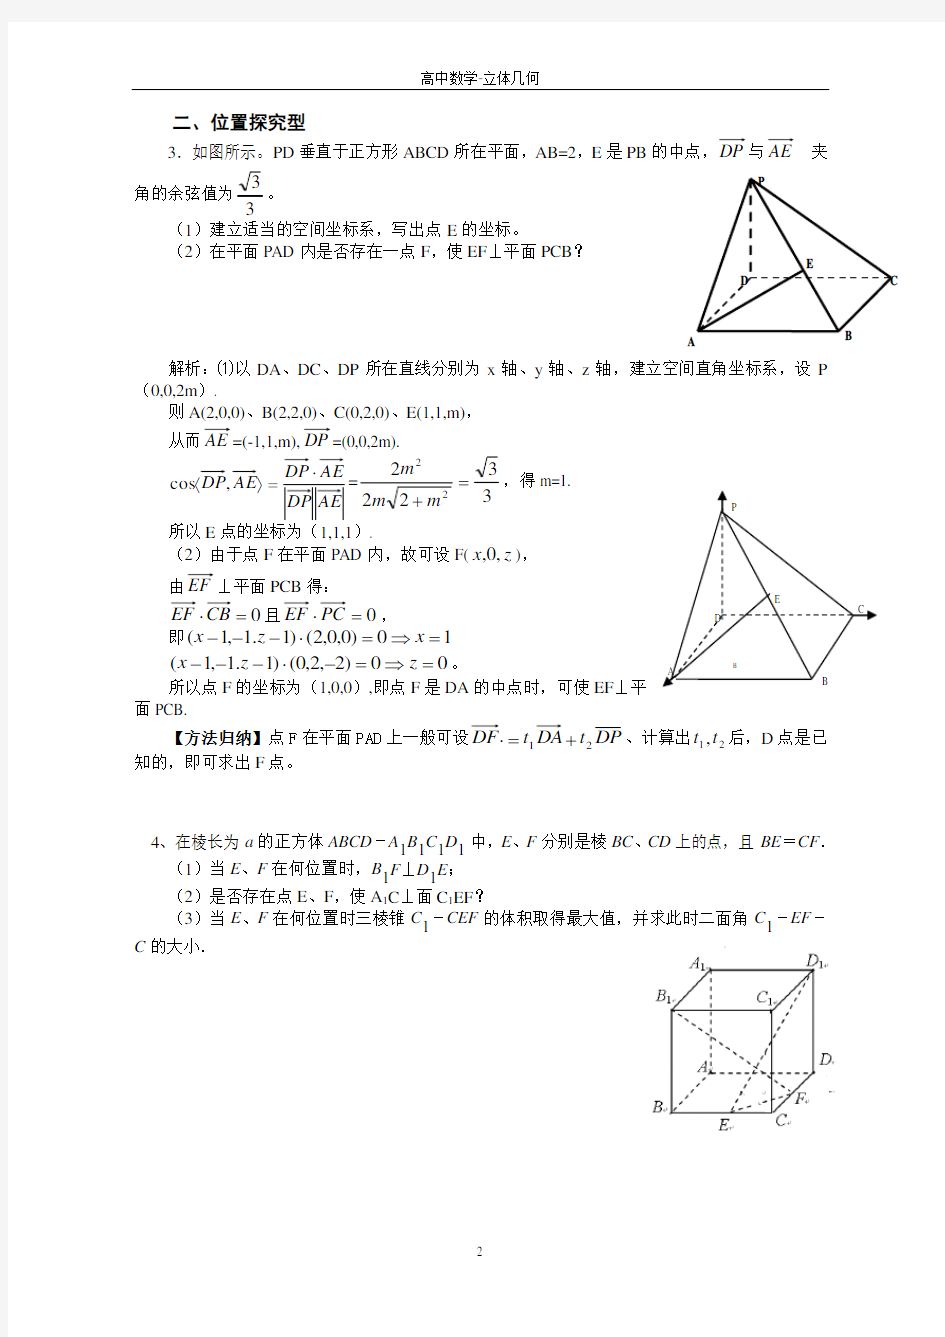 第九讲-立体几何中探索性问题的向量解法